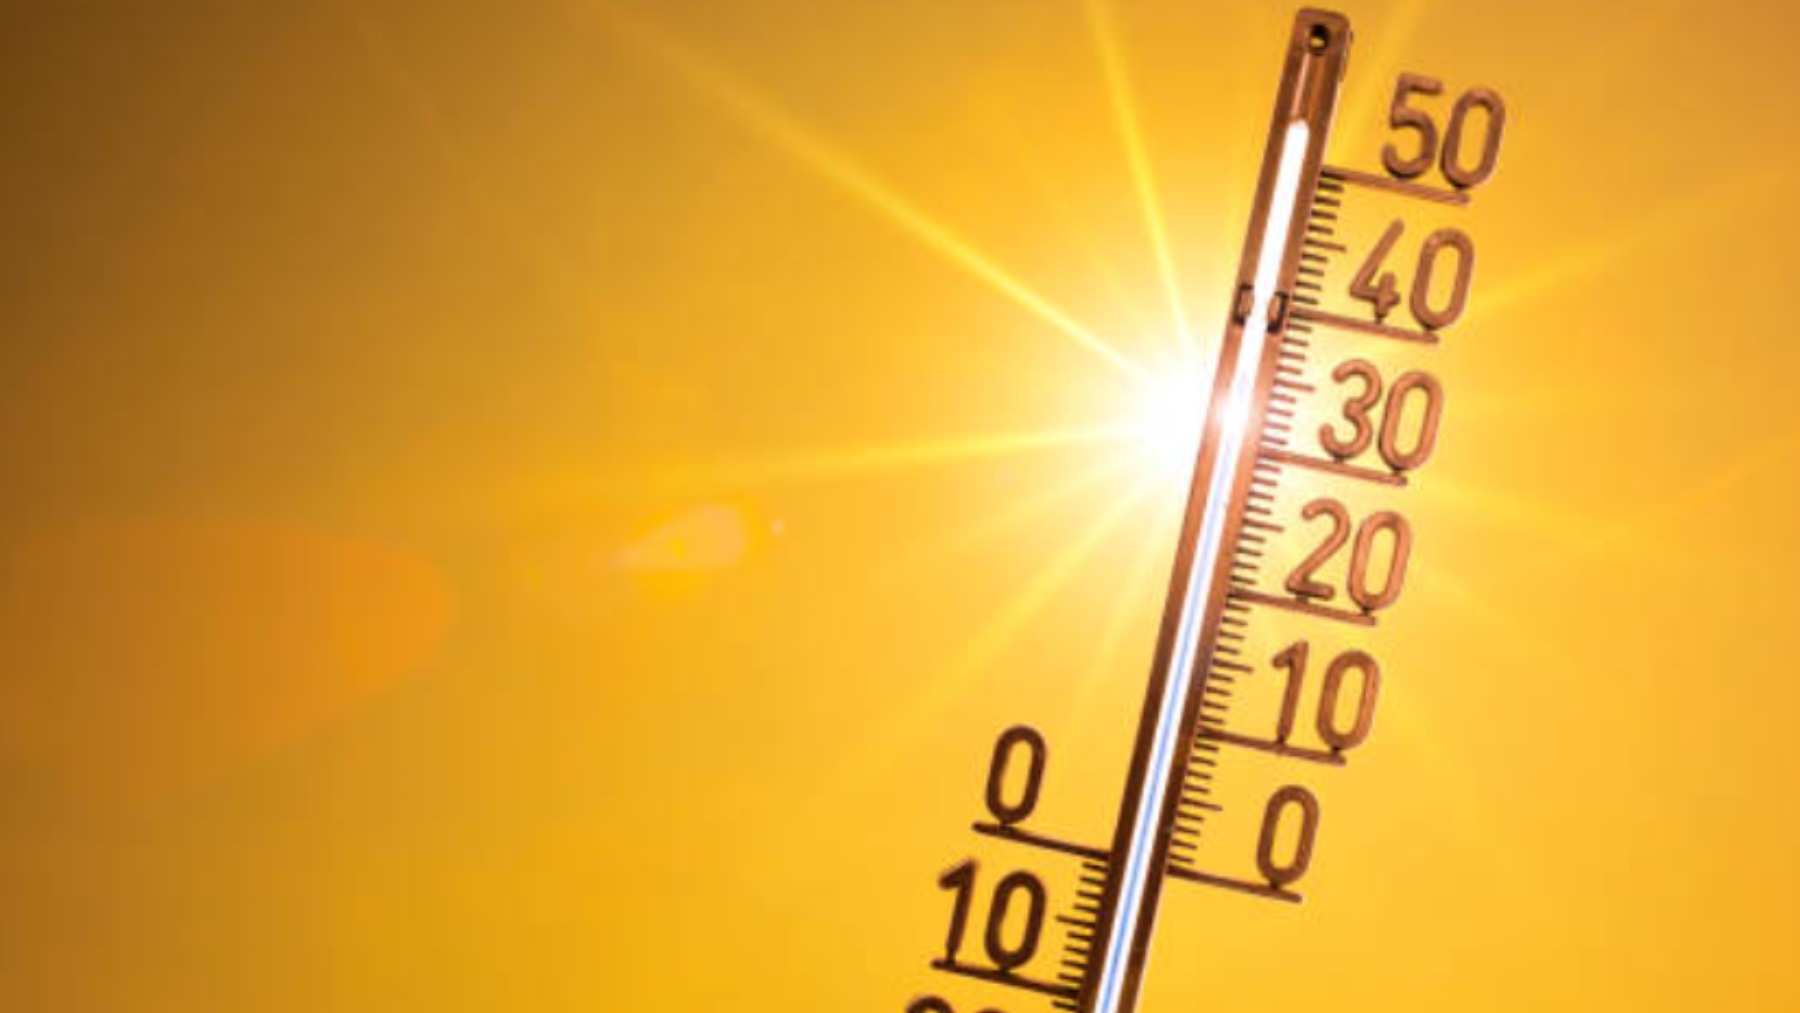 Sa Pobla, Petra y Sant Antoni alcanzan los 37 grados por la llegada de la primera ola de calor a Baleares